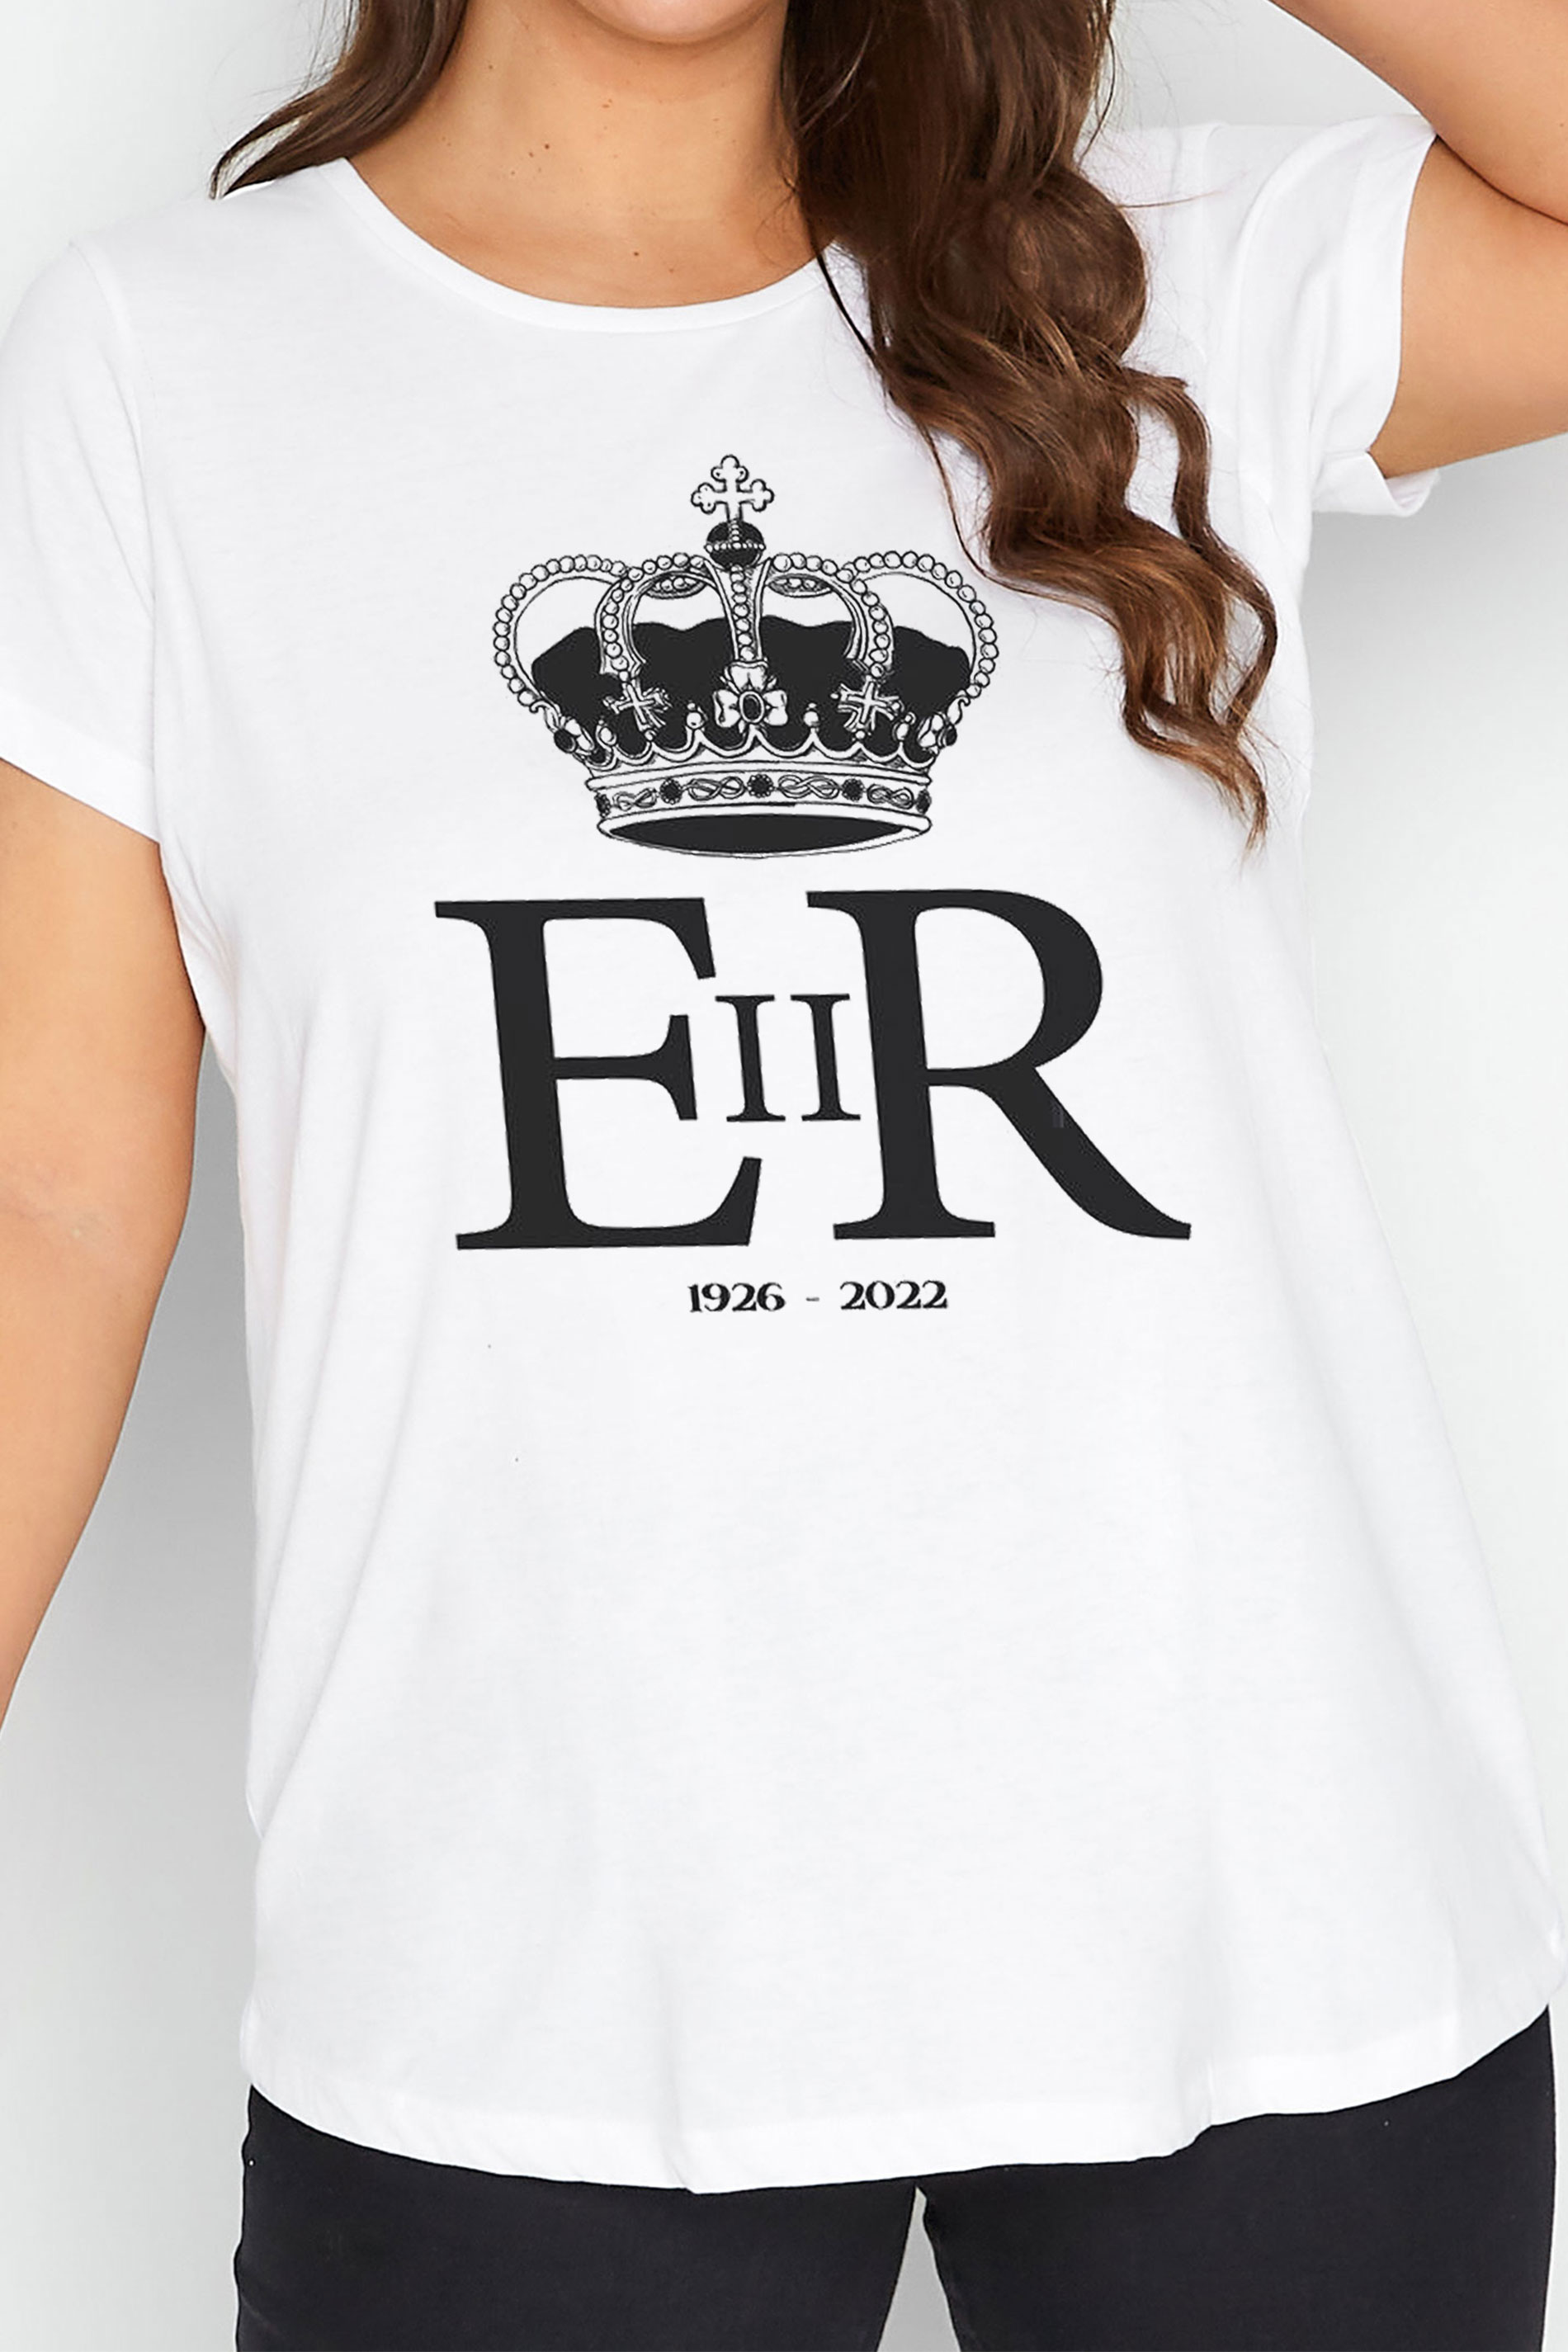 Queen Elizabeth II Regina T-Shirt 1